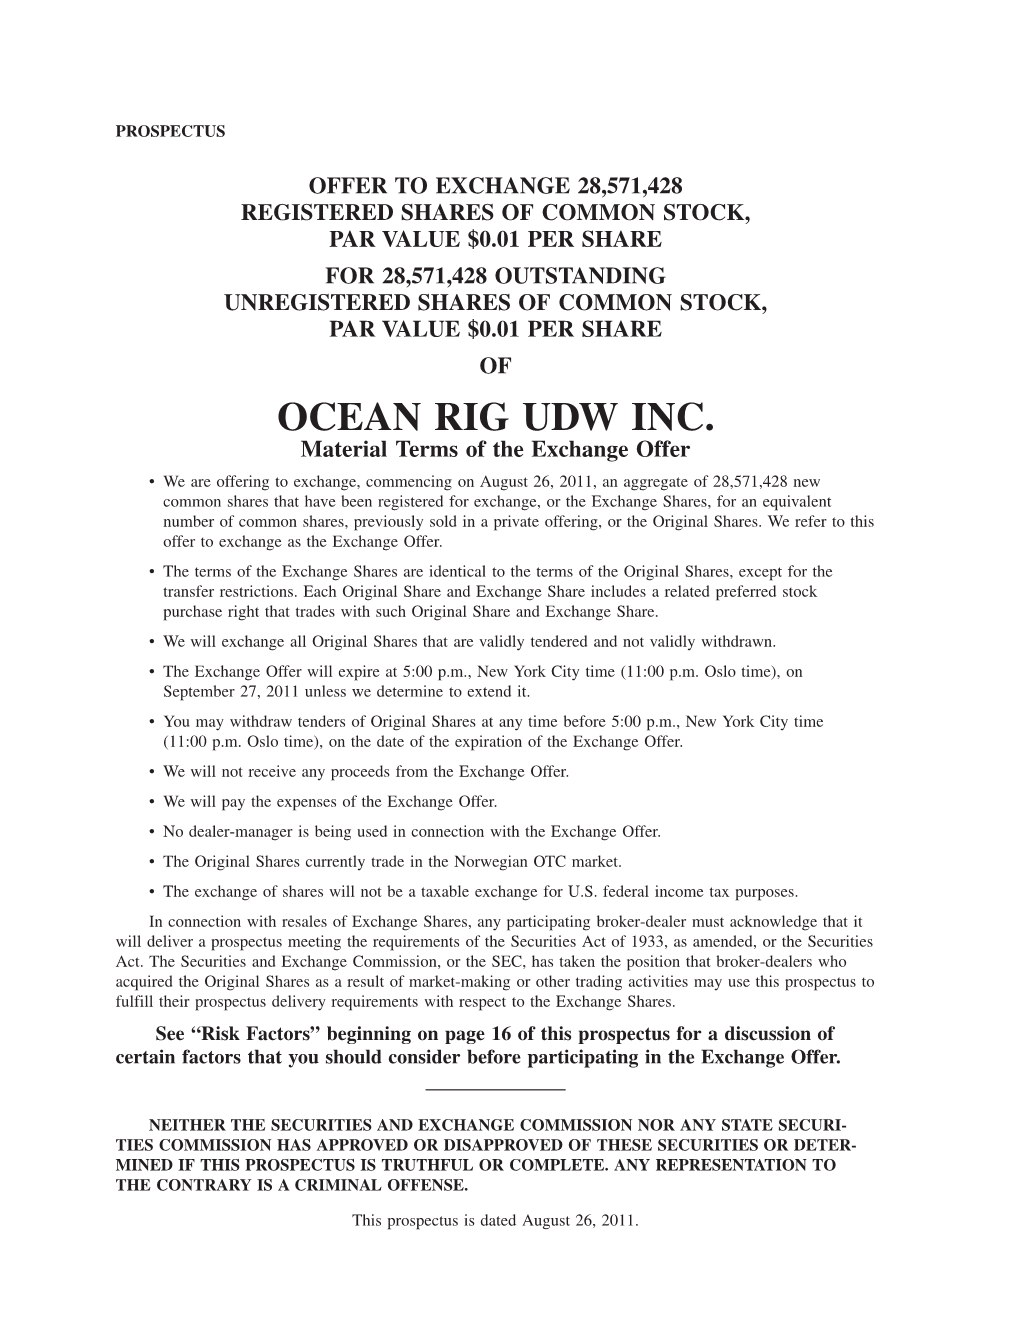 Ocean Rig Udw Inc